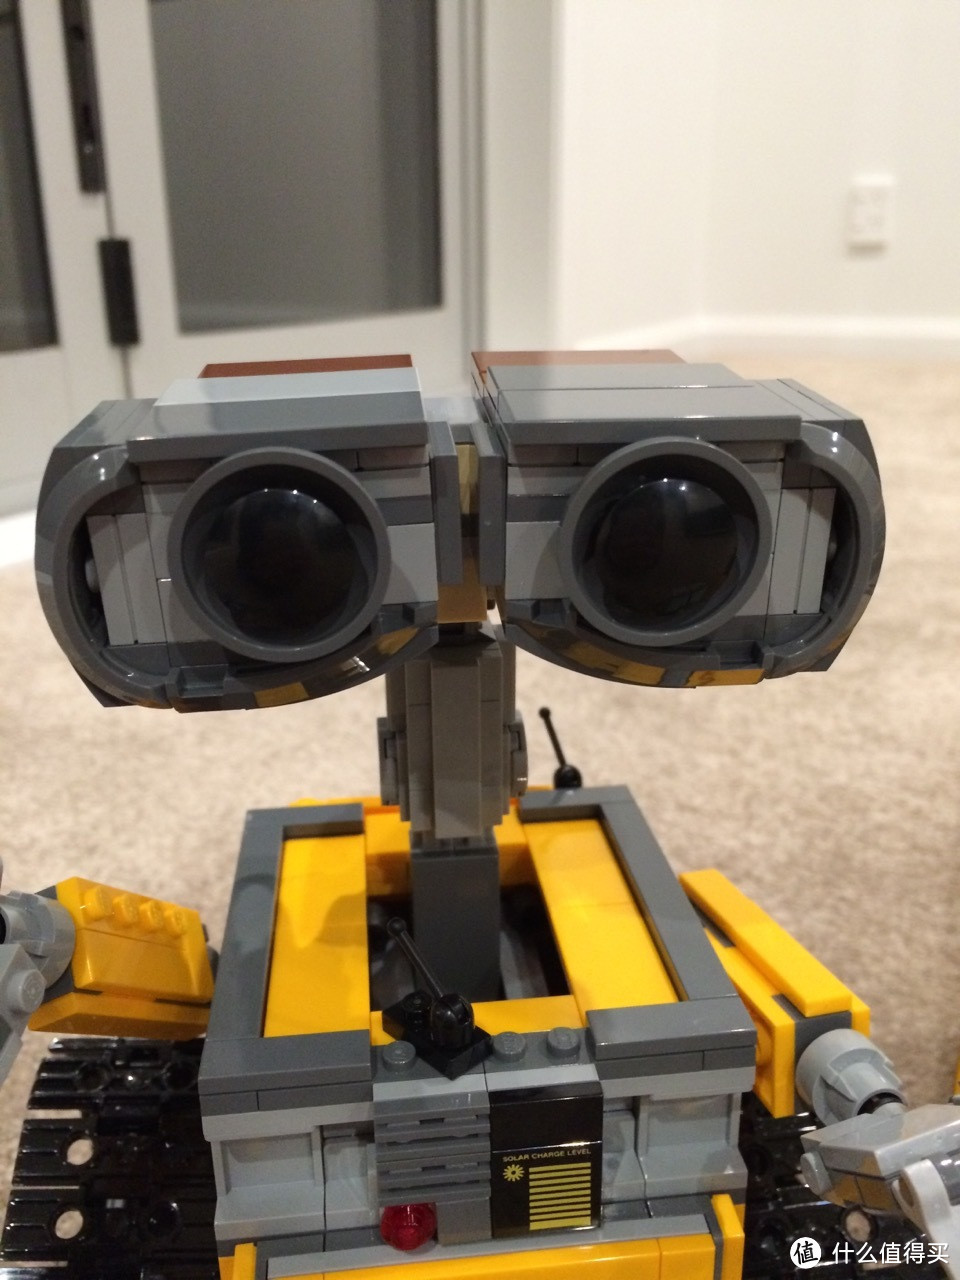 我才是大眼萌！LEGO 乐高 IDEAS系列 21303 WALL E 瓦力 开箱拼装